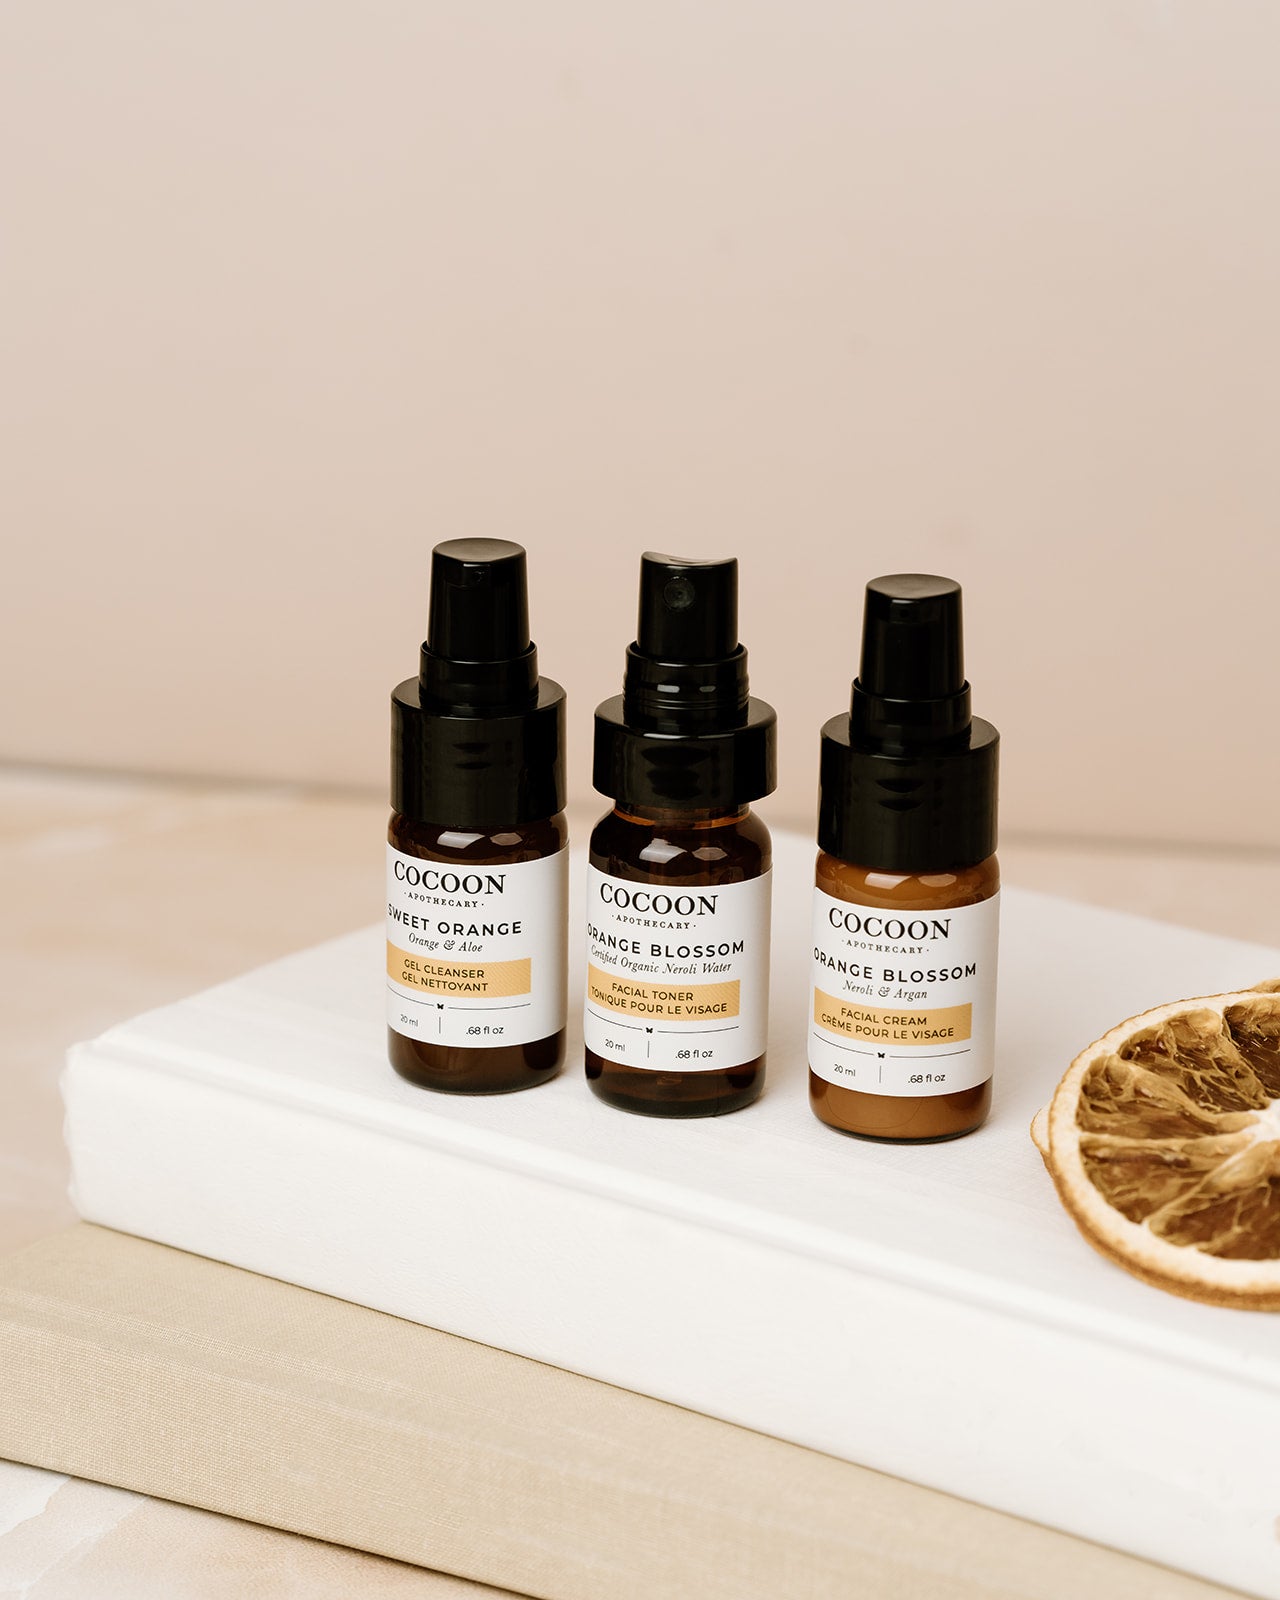 Orange blossom skincare starter kit, trial sized for oily skin, Cleanser, toner, moisturizer all ecocert